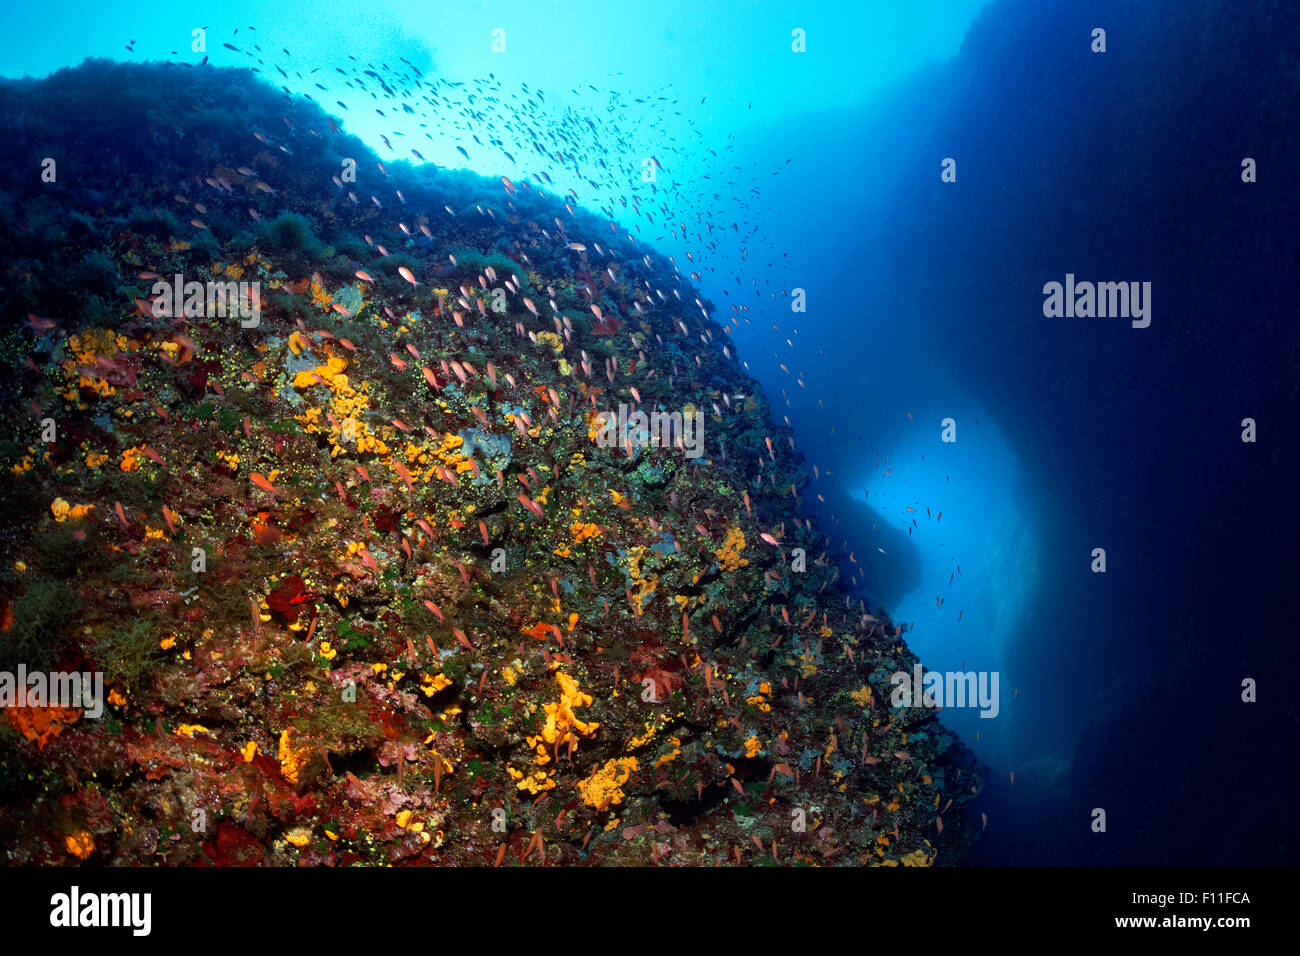 Les roches sous-marines, couvert de corail avec banc de Swallowtail seaperch (Anthias anthias), Éponges multicolores (Porifera), coucher de soleil Banque D'Images